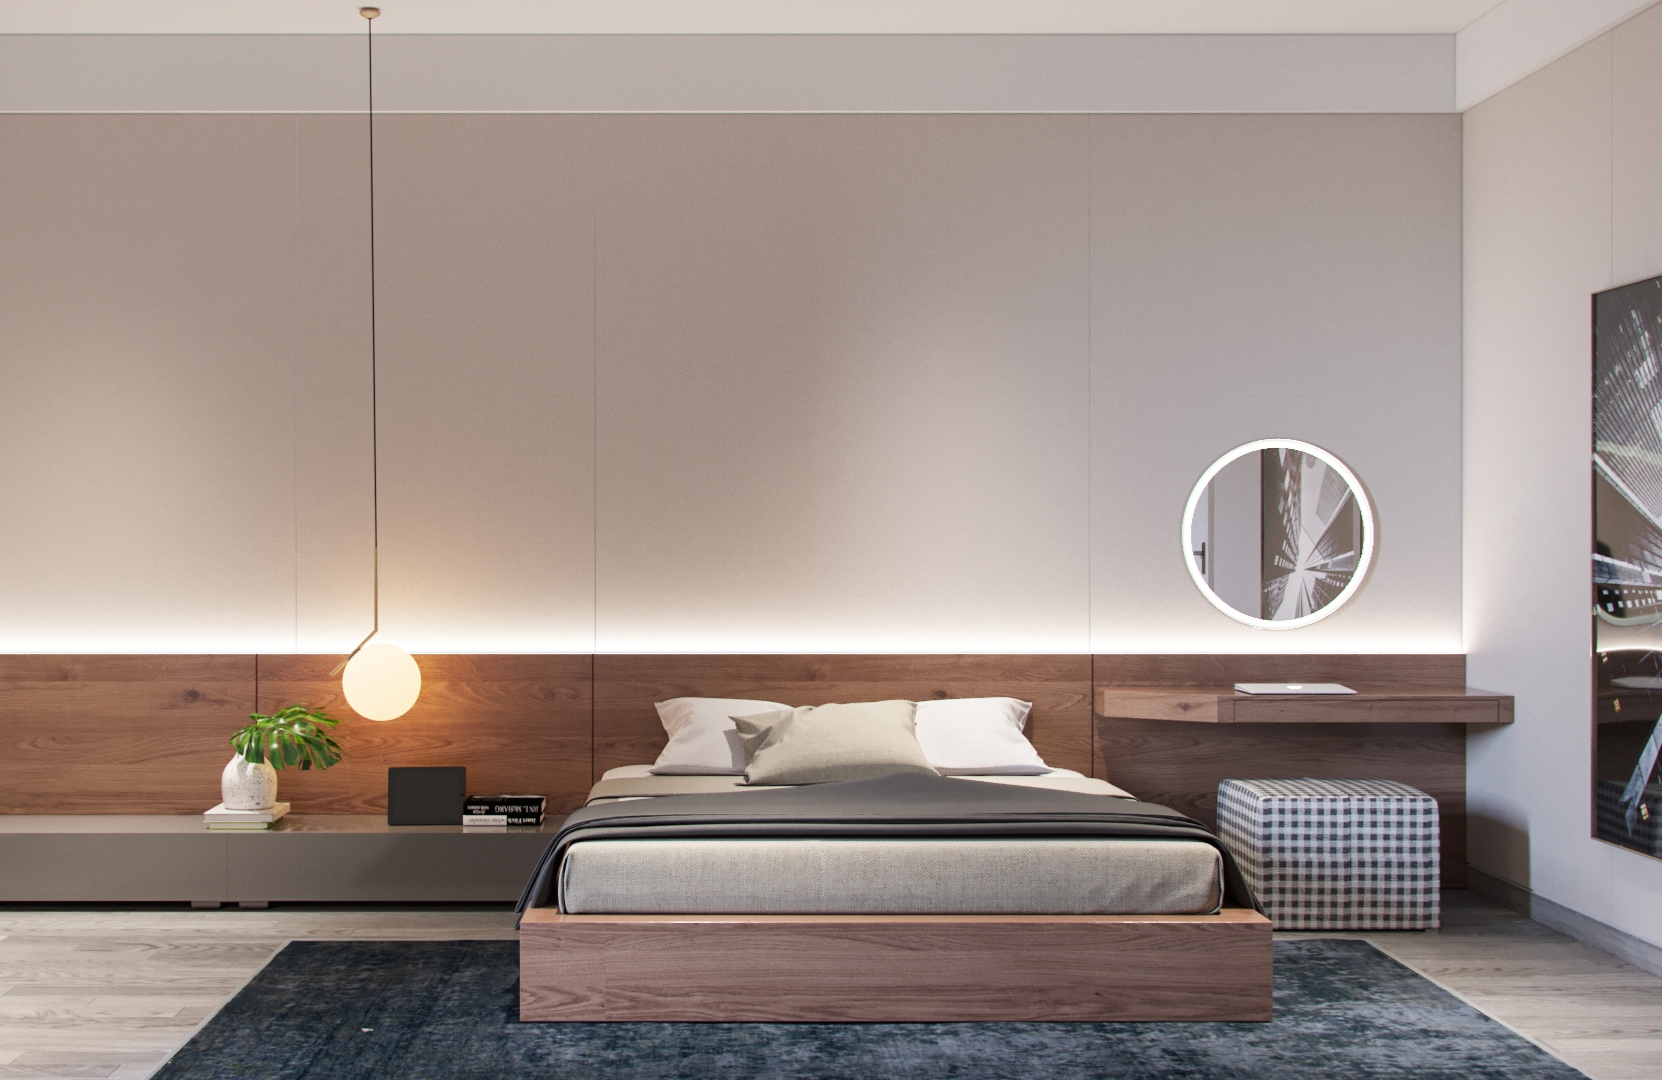 Mẫu thiết kế nội thất phòng ngủ sang trọng với đèn trang trí đơn giản